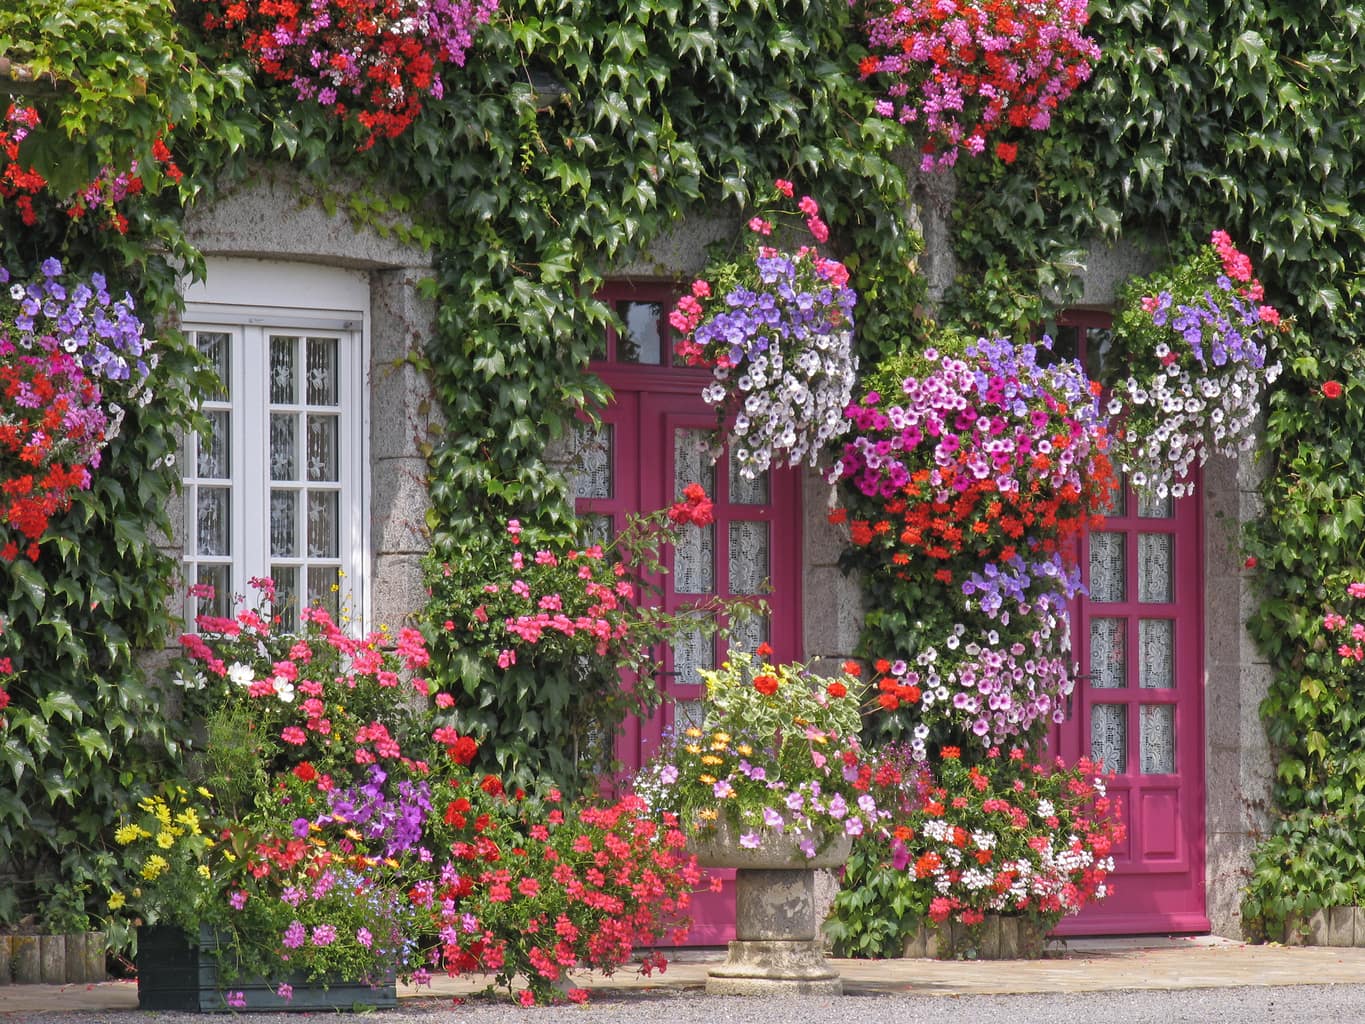 Tô điểm “giao diện” cửa nhà thêm xanh bằng cây cảnh và hoa tươi khiến ai đi qua cũng phải ngoái nhìn - Ảnh 1.